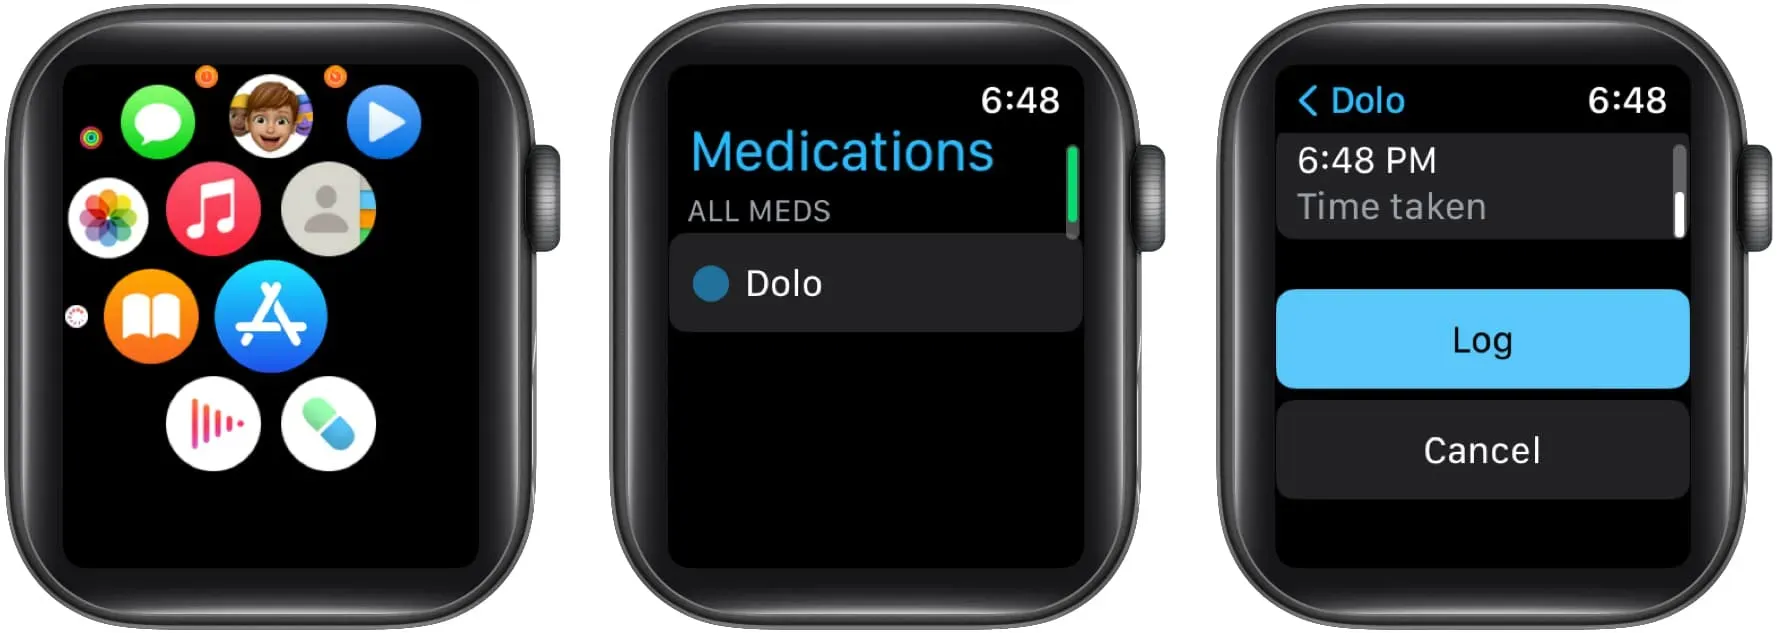 Зарегистрируйте лекарства в Apple Watch